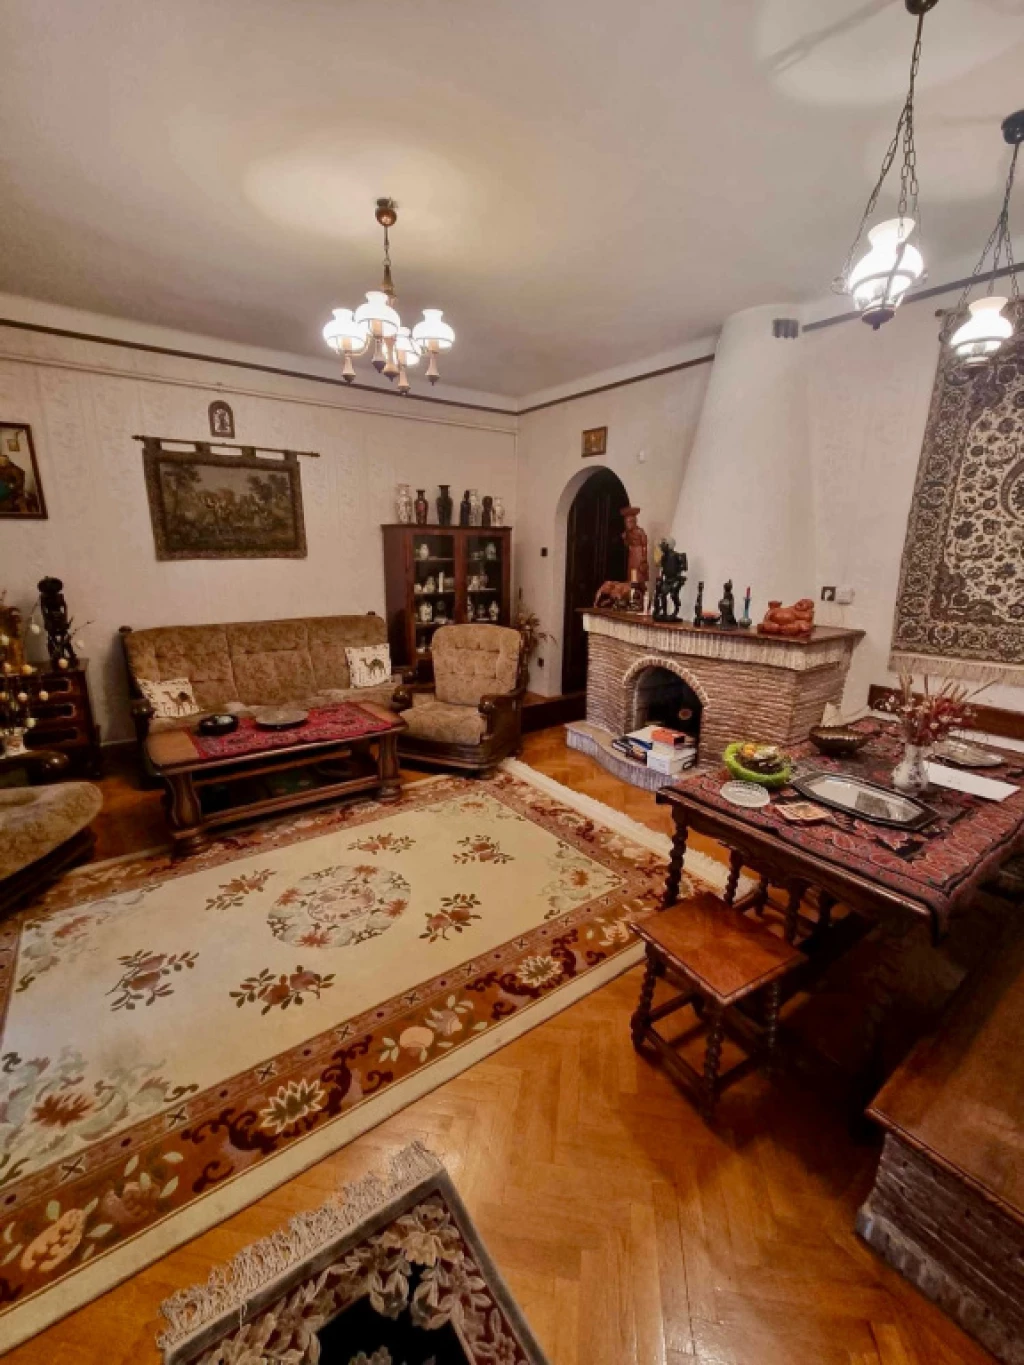 For sale house, Budapest III. kerület, Domoszló útja